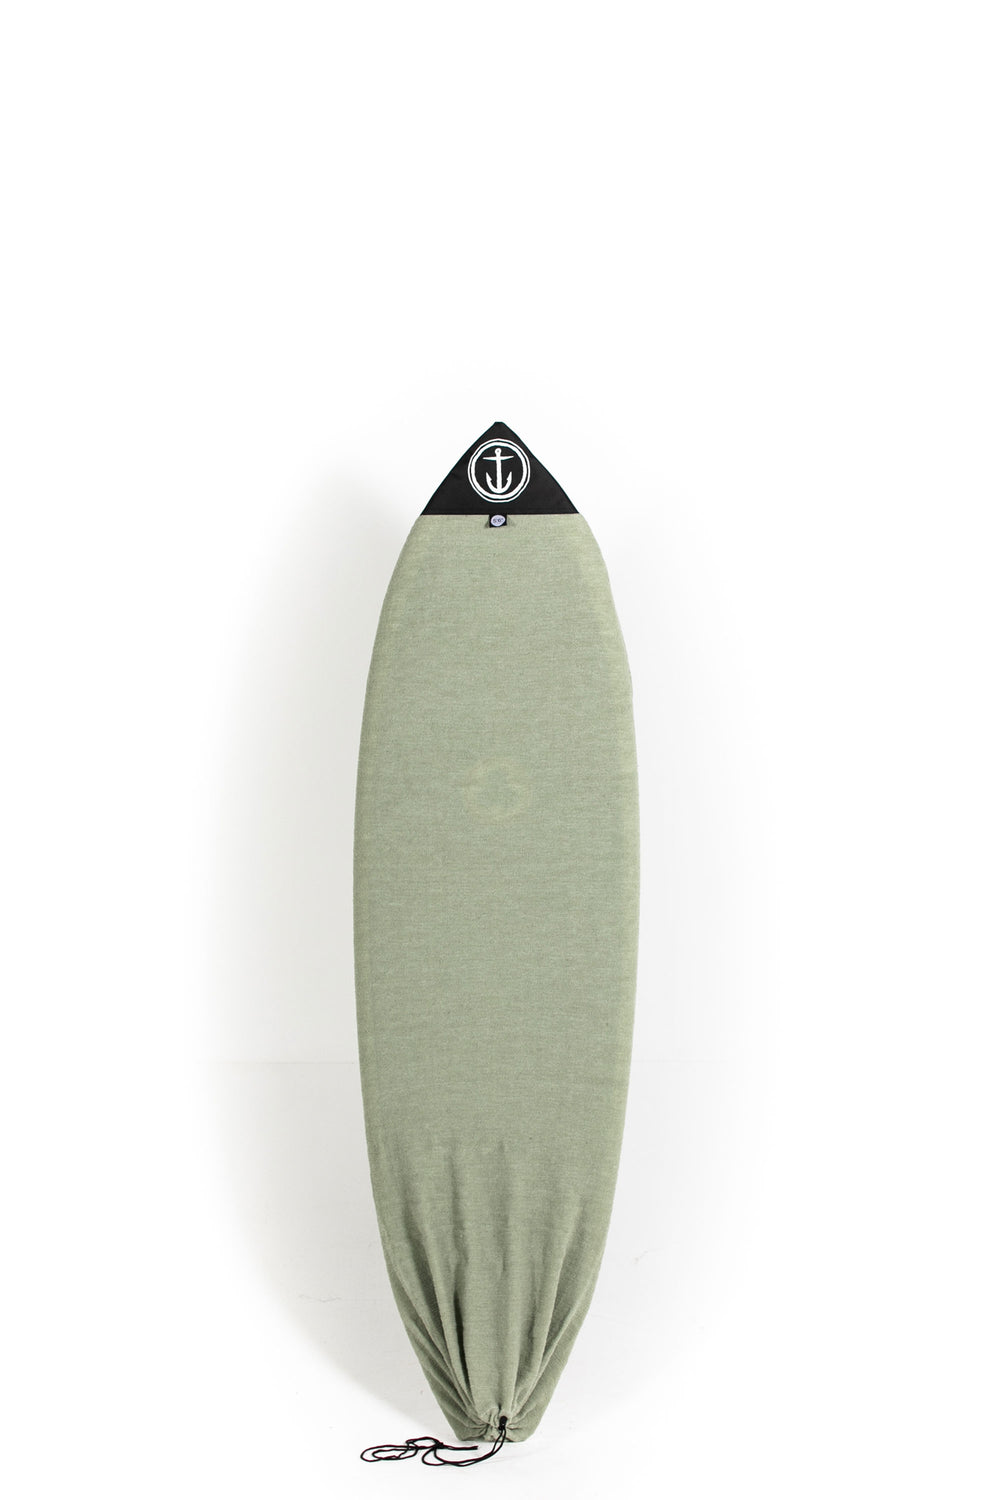 pukas-surf-shop-captain-fin-boardbag-sock-hybrid-lto-6-6-